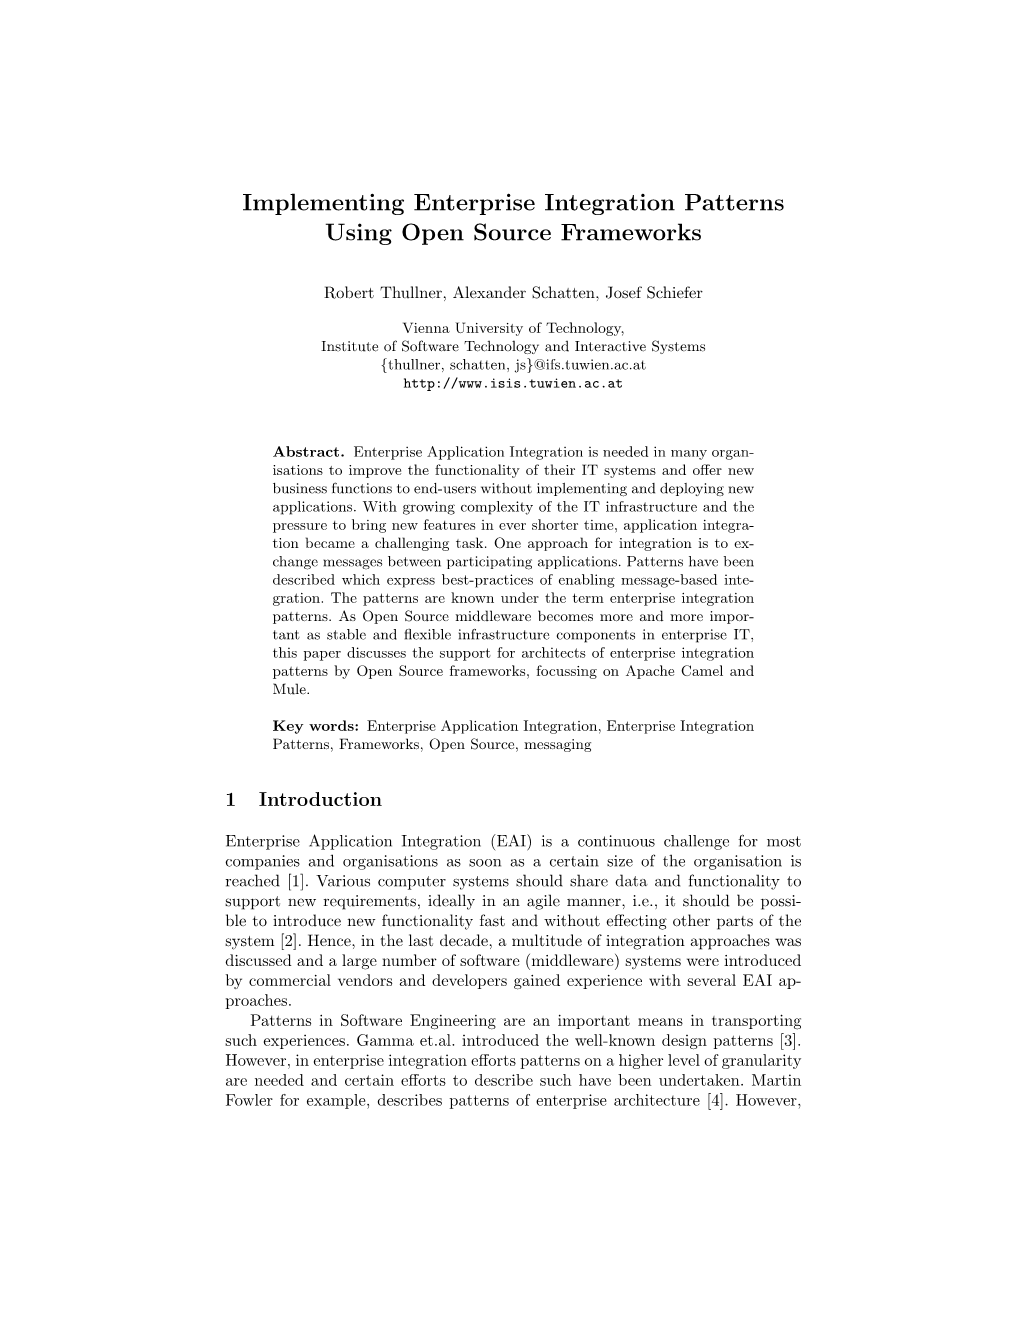 Implementing Enterprise Integration Patterns Using Open Source Frameworks